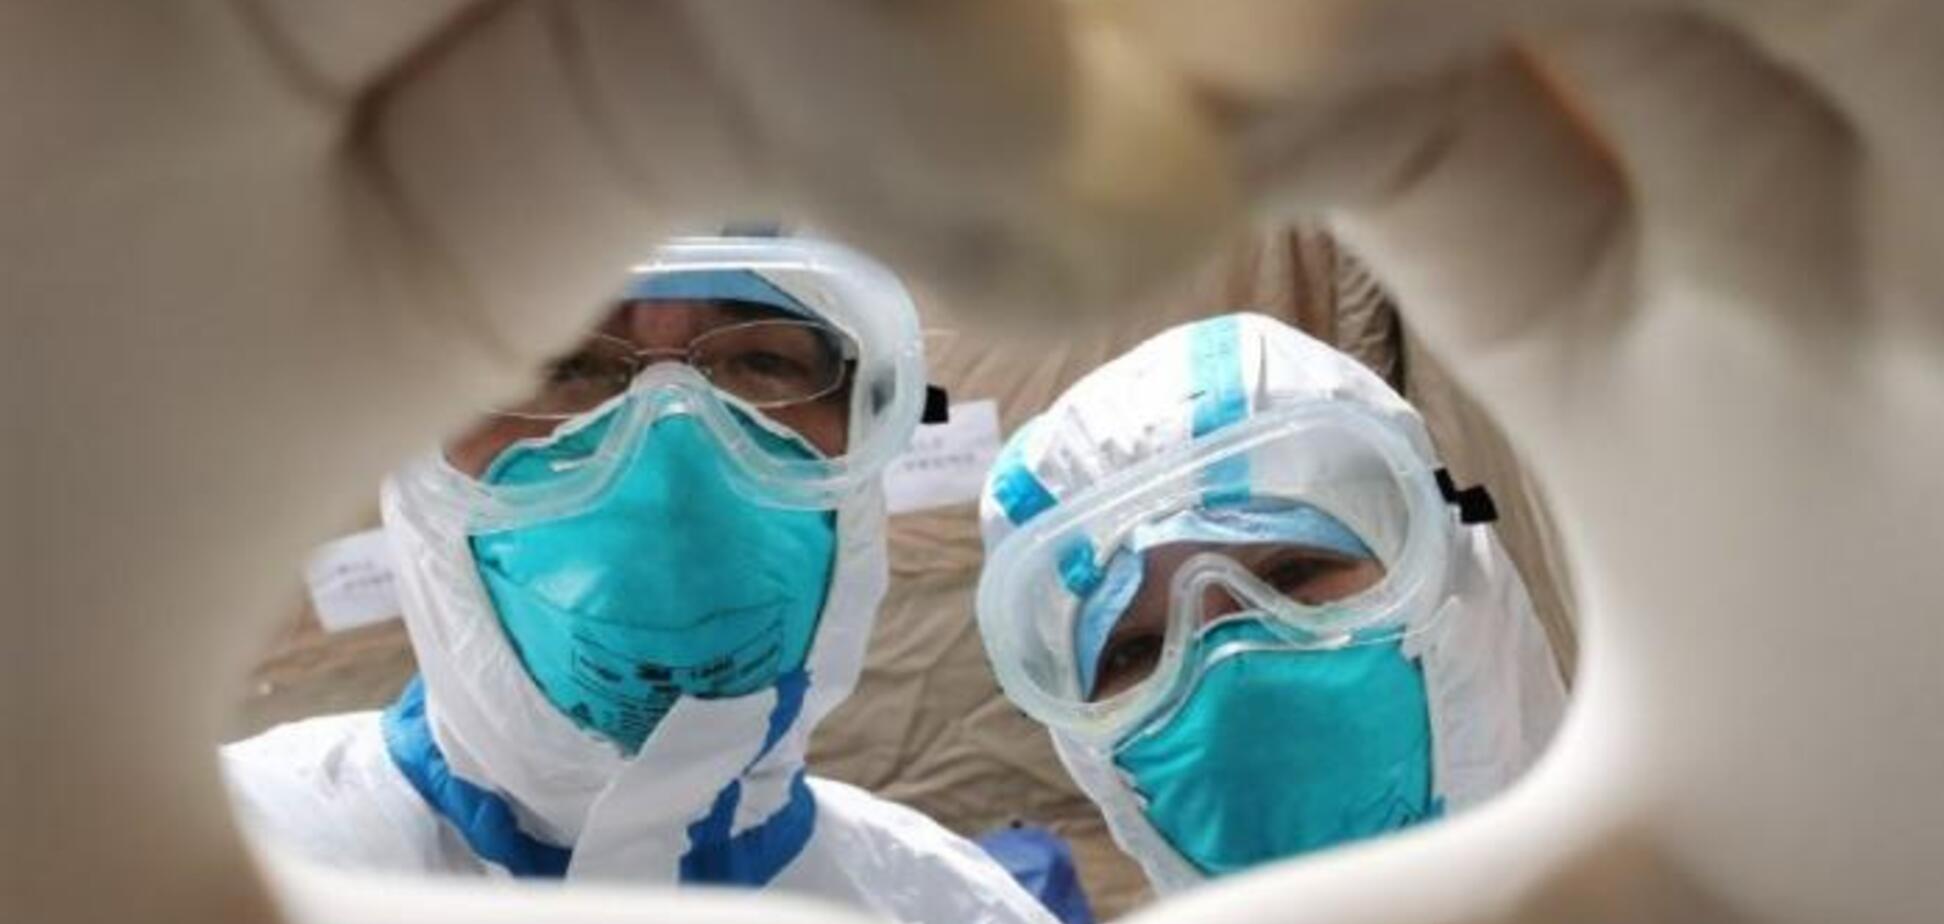 Рано зраділи: 195 пацієнтів в Китаї повторно захворіли на коронавірус